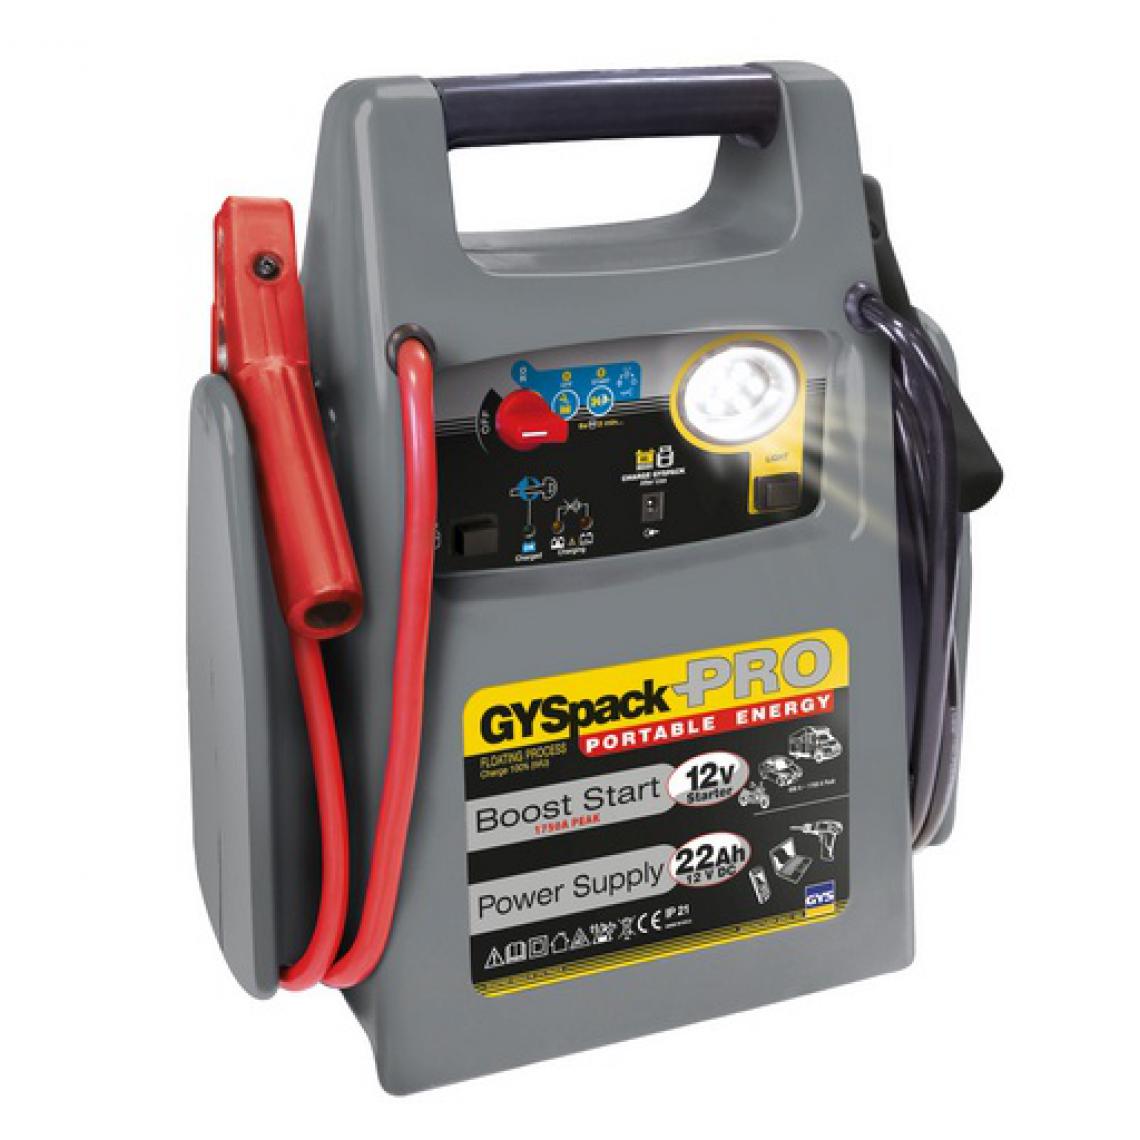 Gys - Gys - Démarreur batterie autonome 2en1 12V 22Ah - GYSPACK PRO - Consommables pour outillage motorisé